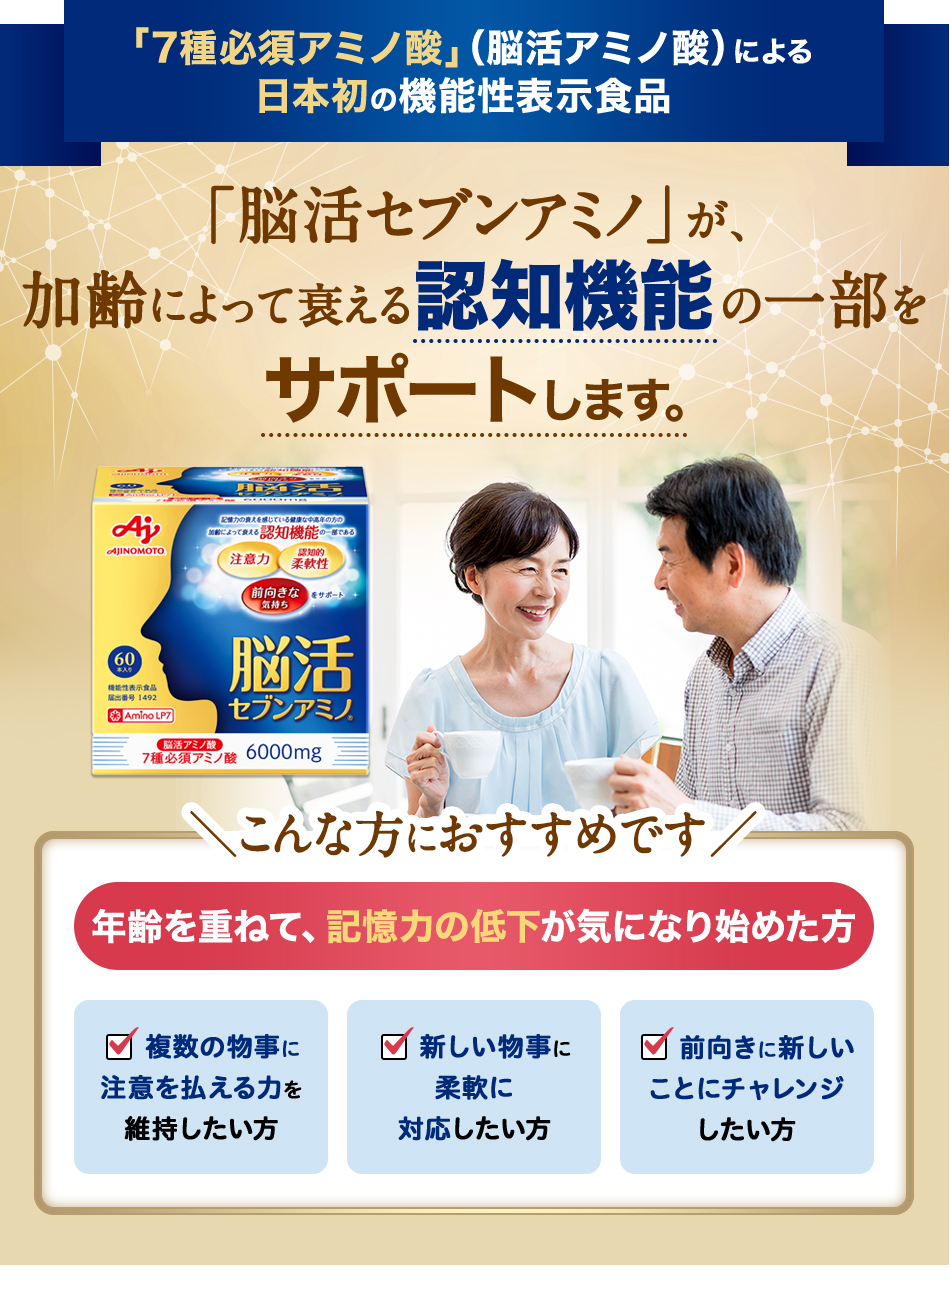 「7種必須アミノ酸」（脳活アミノ酸）による日本初の機能性表示食品 「脳活セブンアミノ」が、加齢による認知機能の一部の衰えにアプローチ。